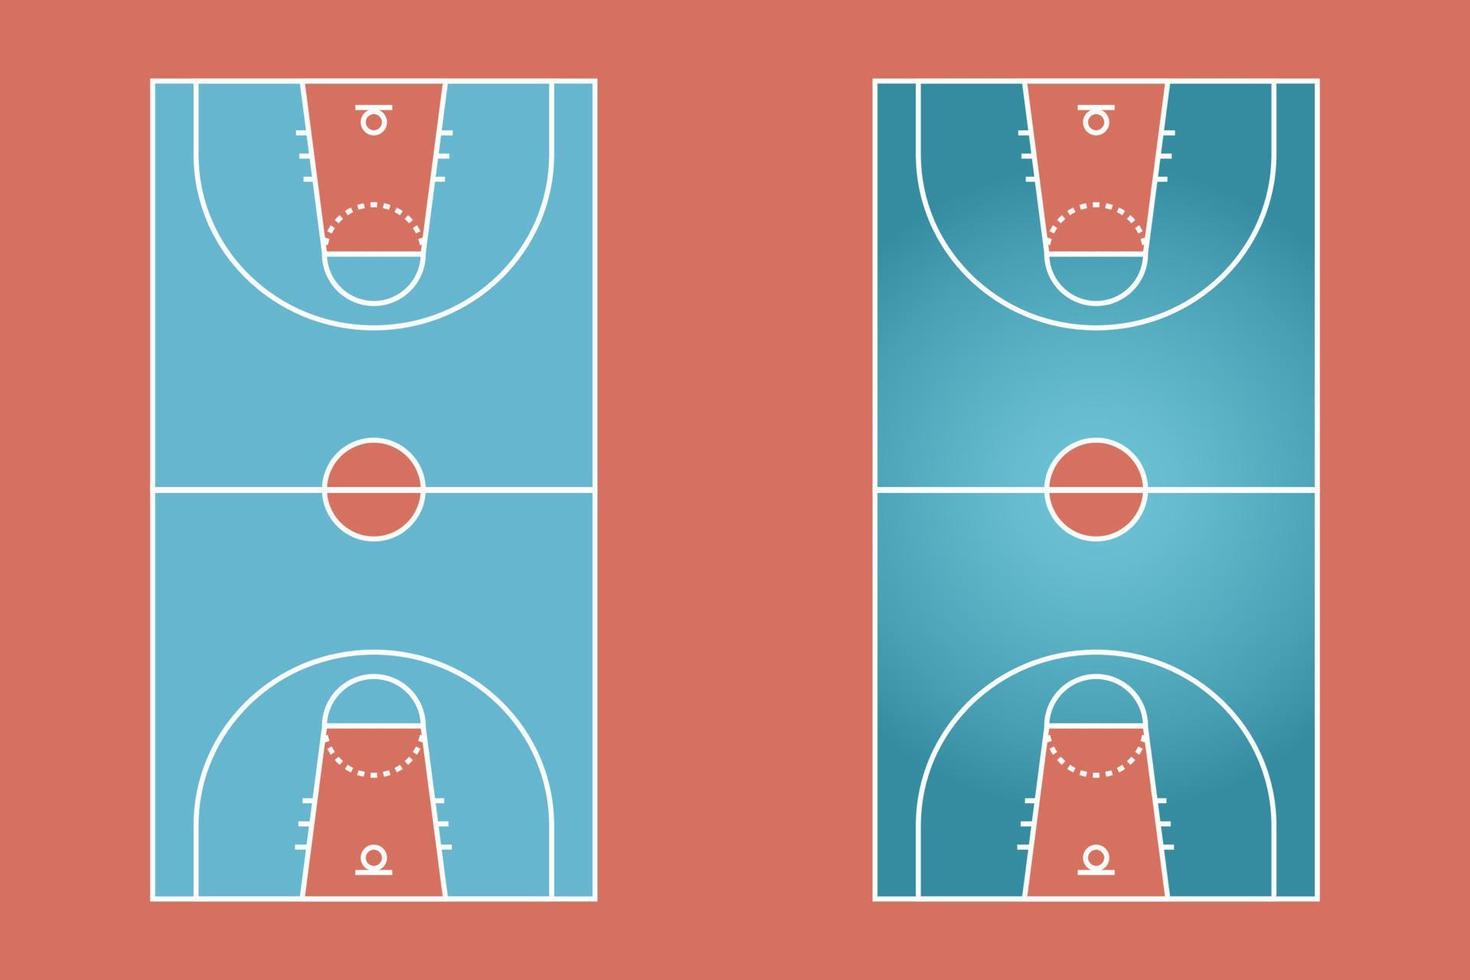 basketbalveld plat ontwerp, sportveld grafische illustratie, vector van basketbalveld en lay-out.